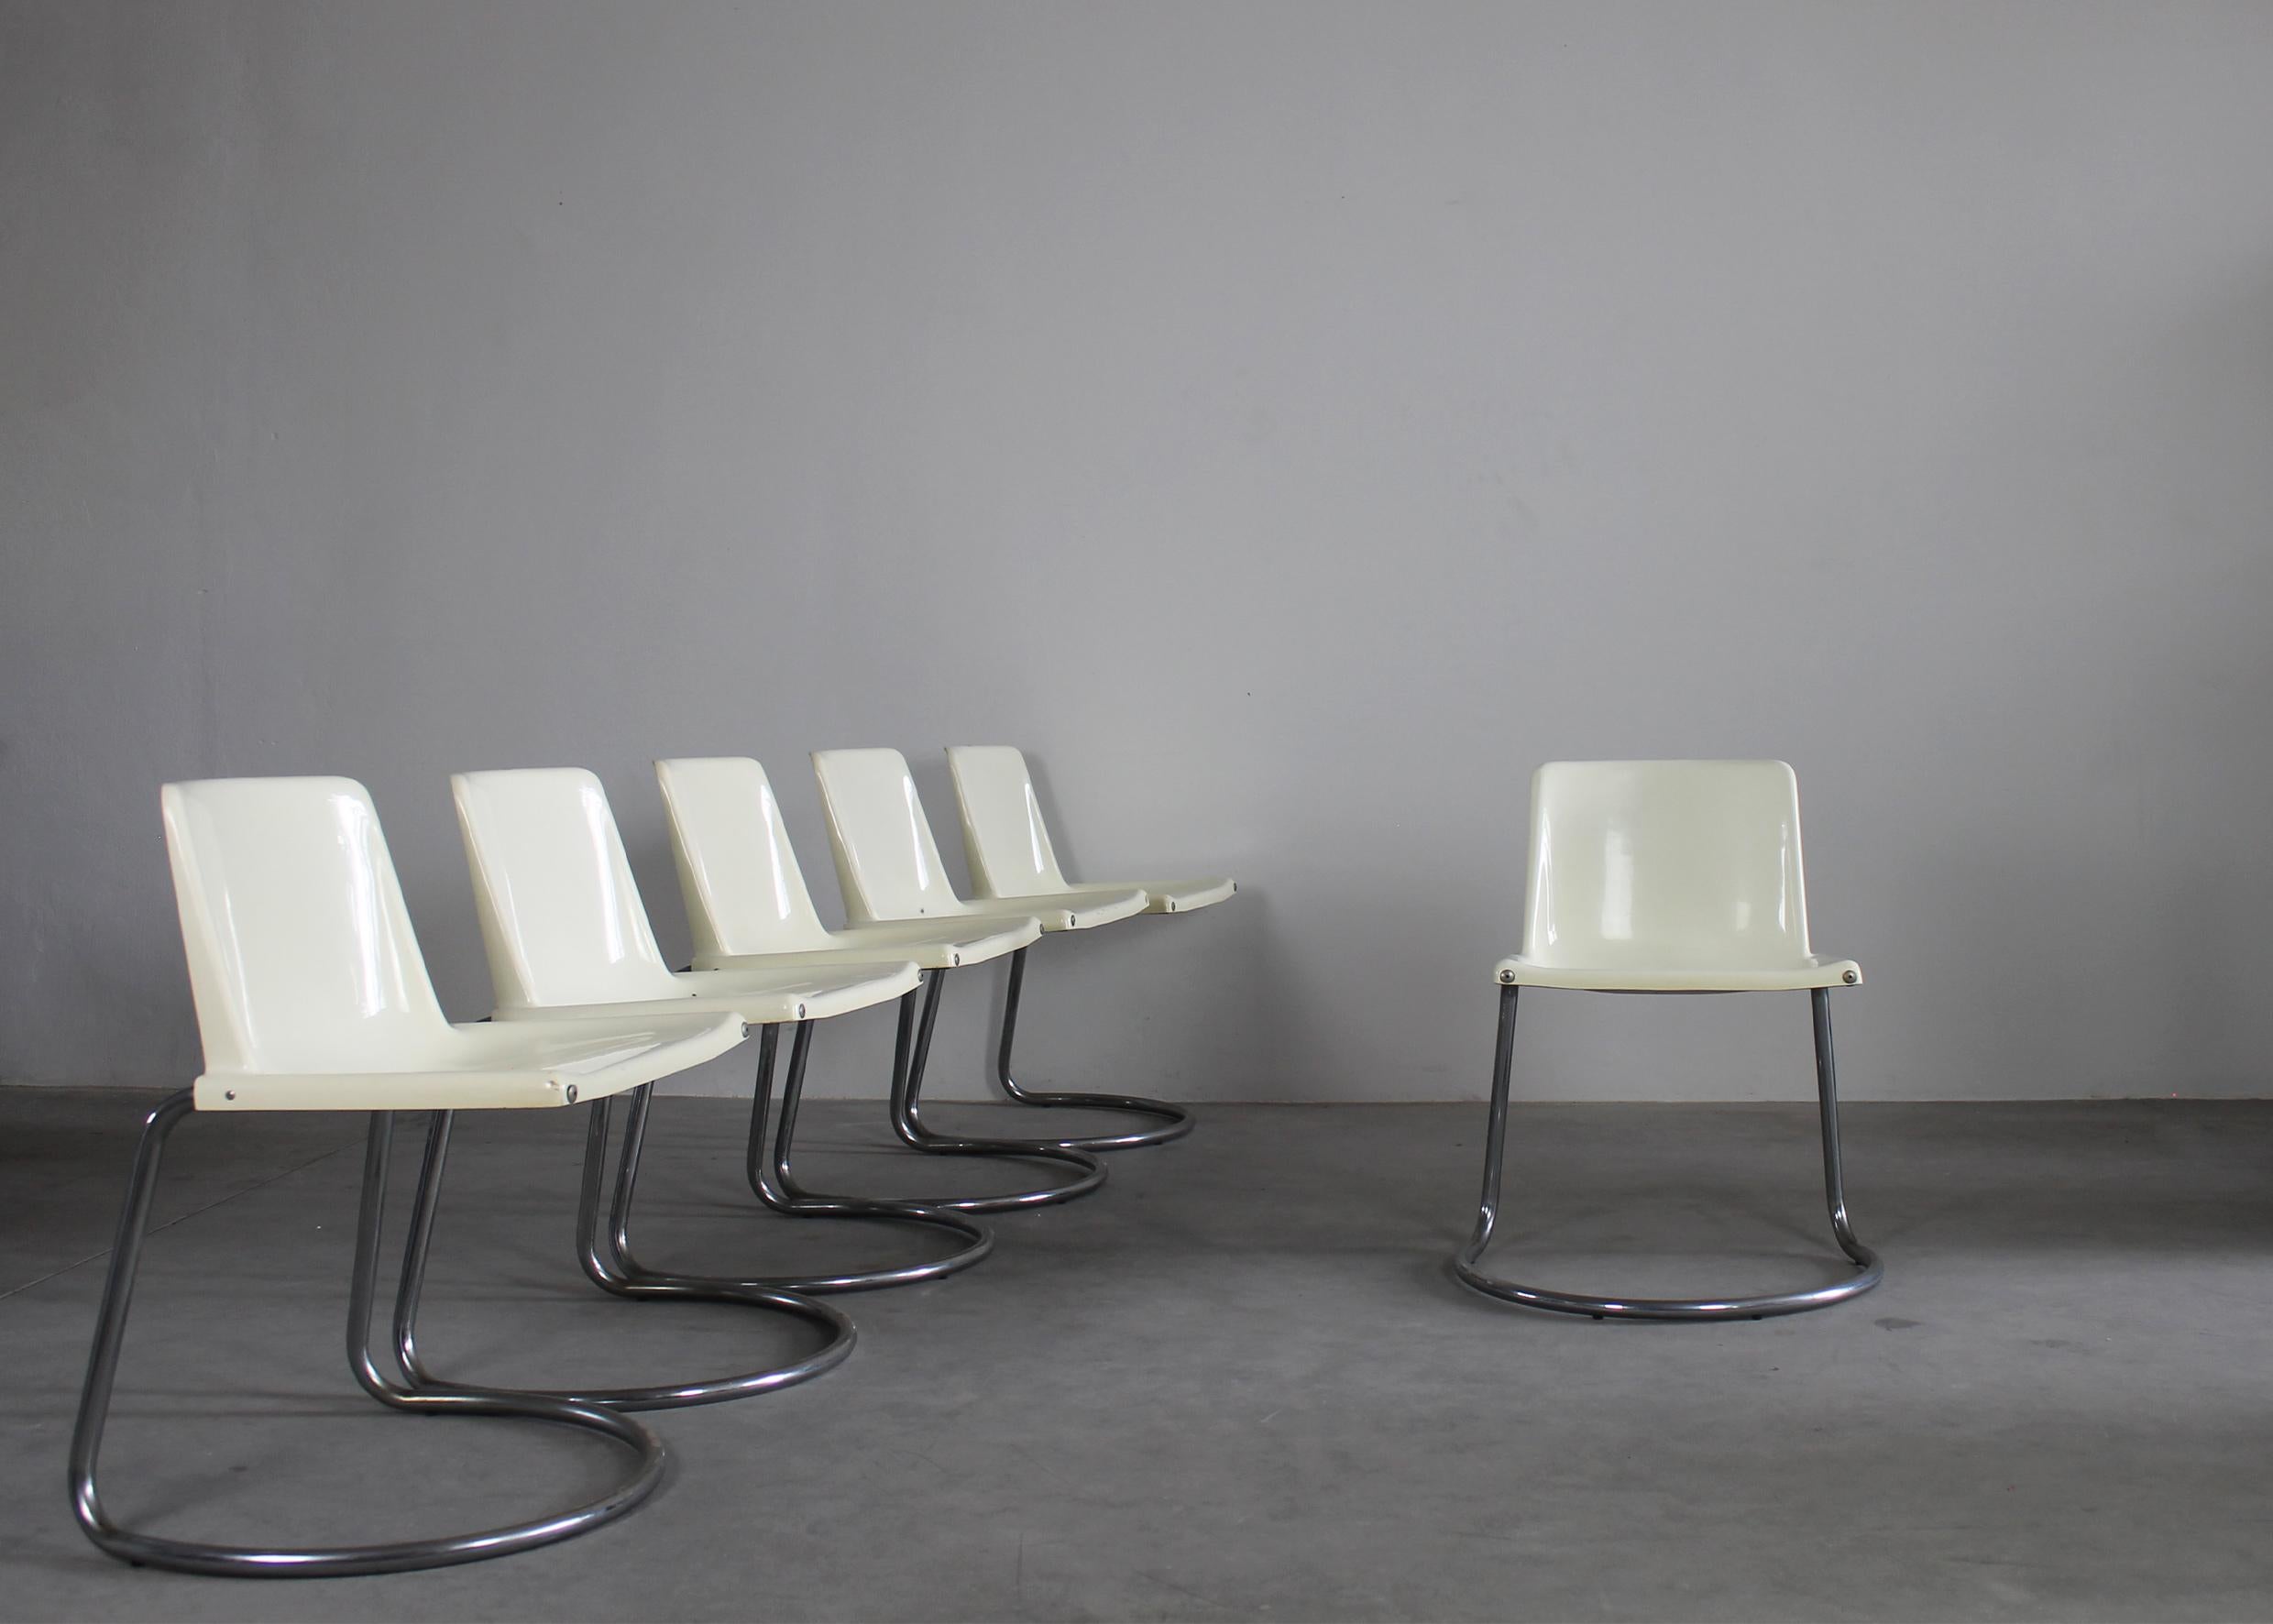 Satz von sechs Stühlen Alessia mit verchromten Metallrohrbeinen und Sitzen aus weißem ABS, entworfen von Giotto Stoppino und hergestellt von Driade in den 1970er Jahren. 

(Marke des Herstellers unter den Sitzen sichtbar)

Giotto Stoppino ist eine